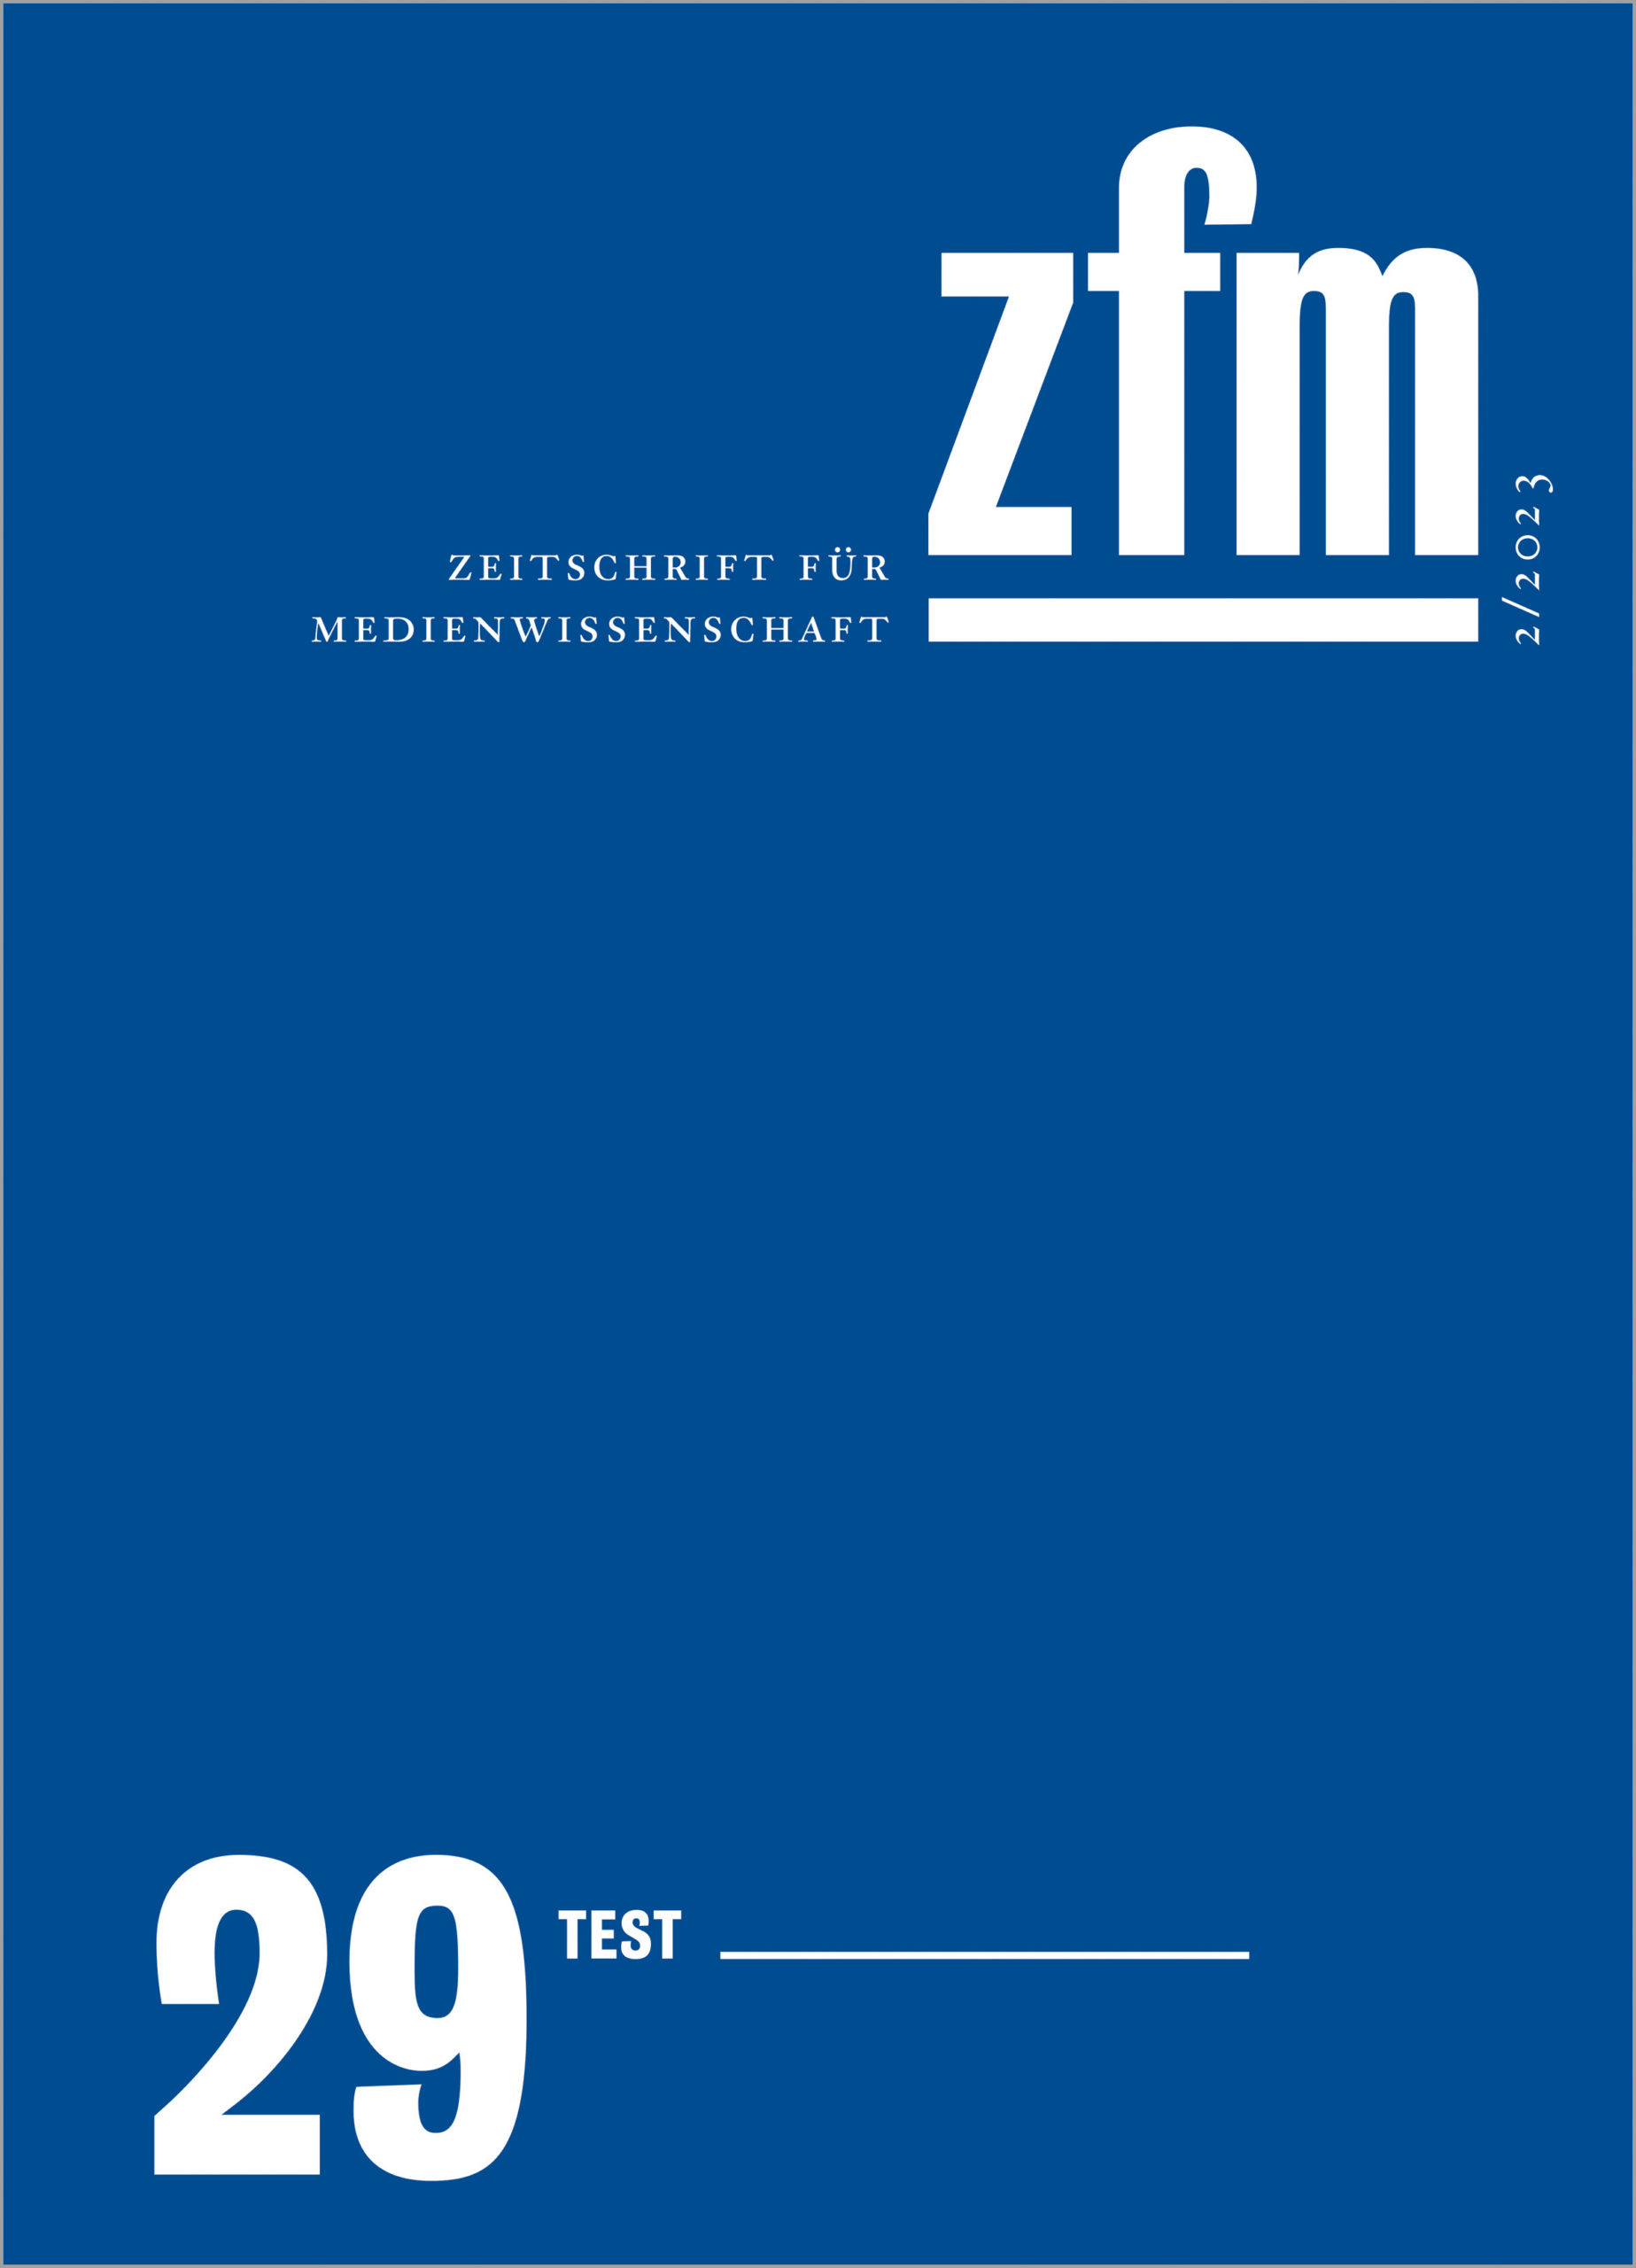 Zeitschrift für<br /> Medienwissenschaft 29 TEST